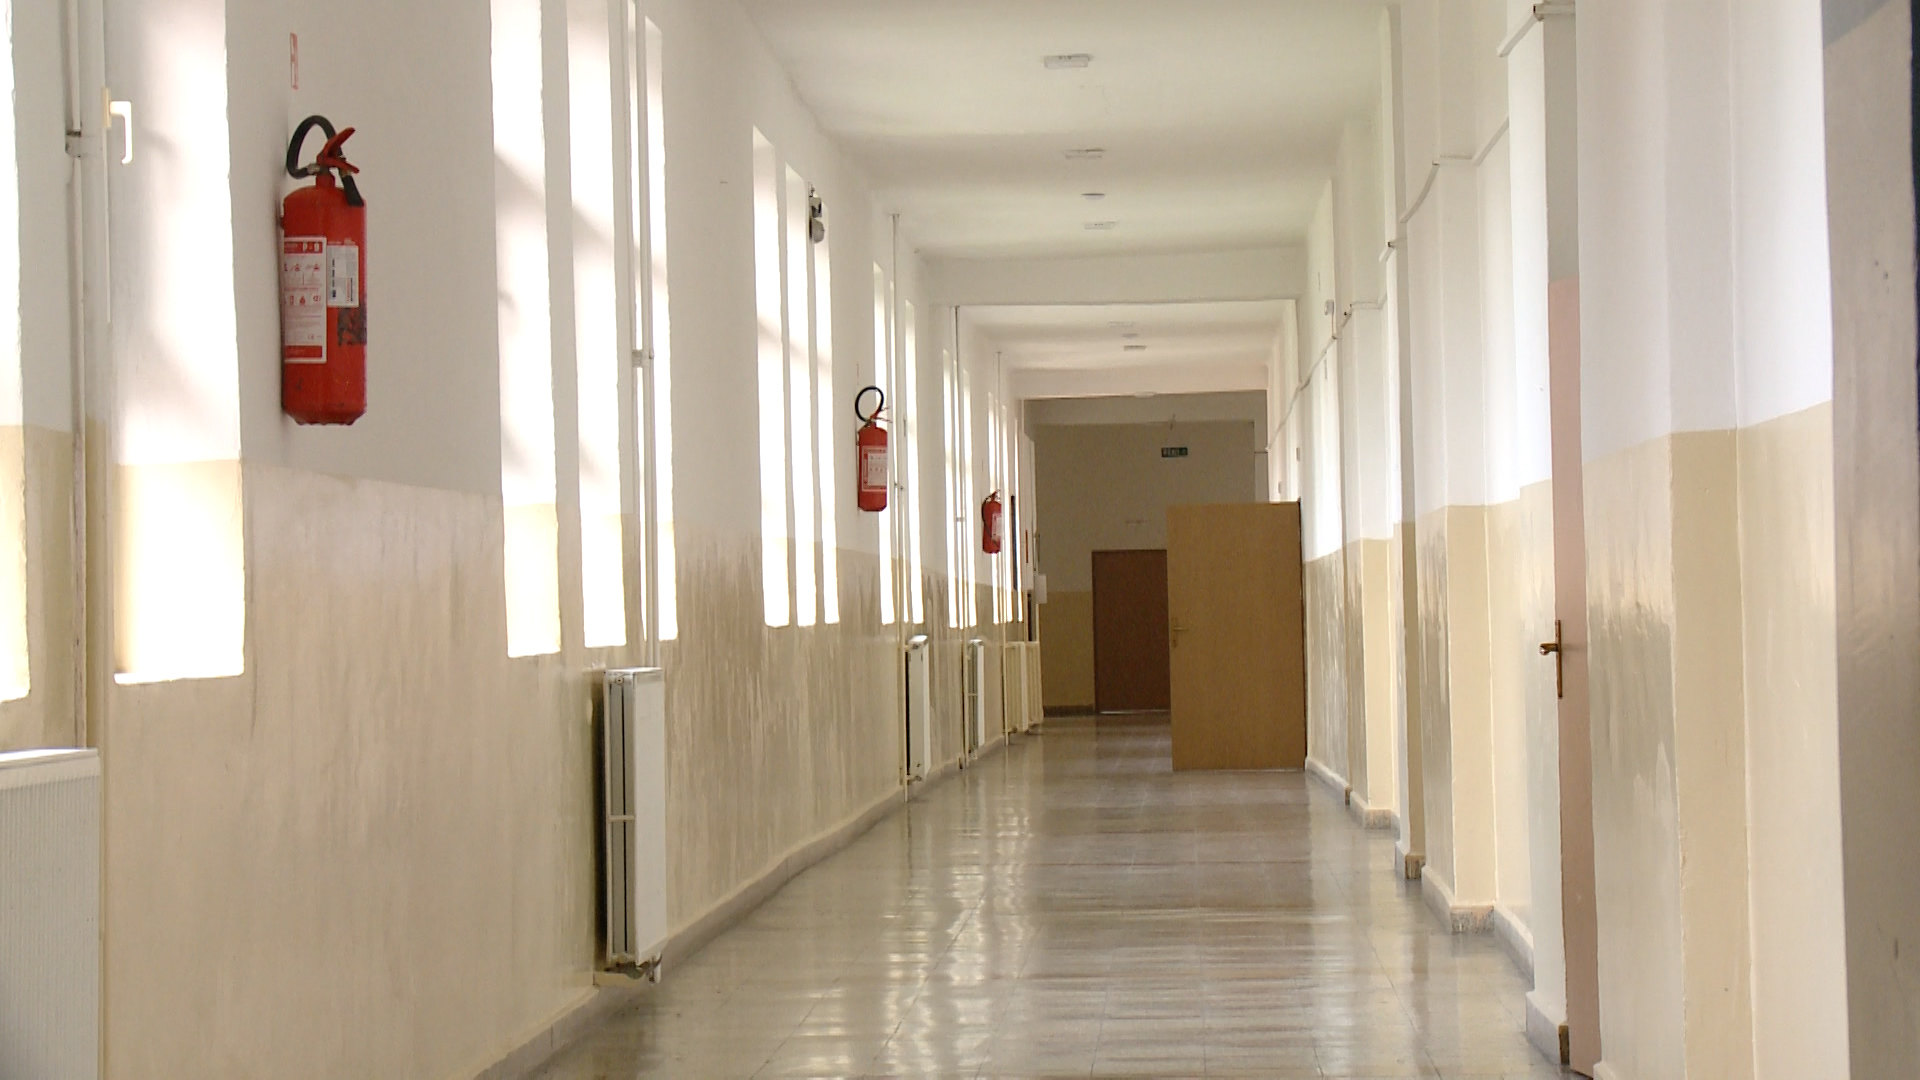 Dyshohet për armë të ftohta dhe narkotikë në një shkollë të mesme në Gjakovë